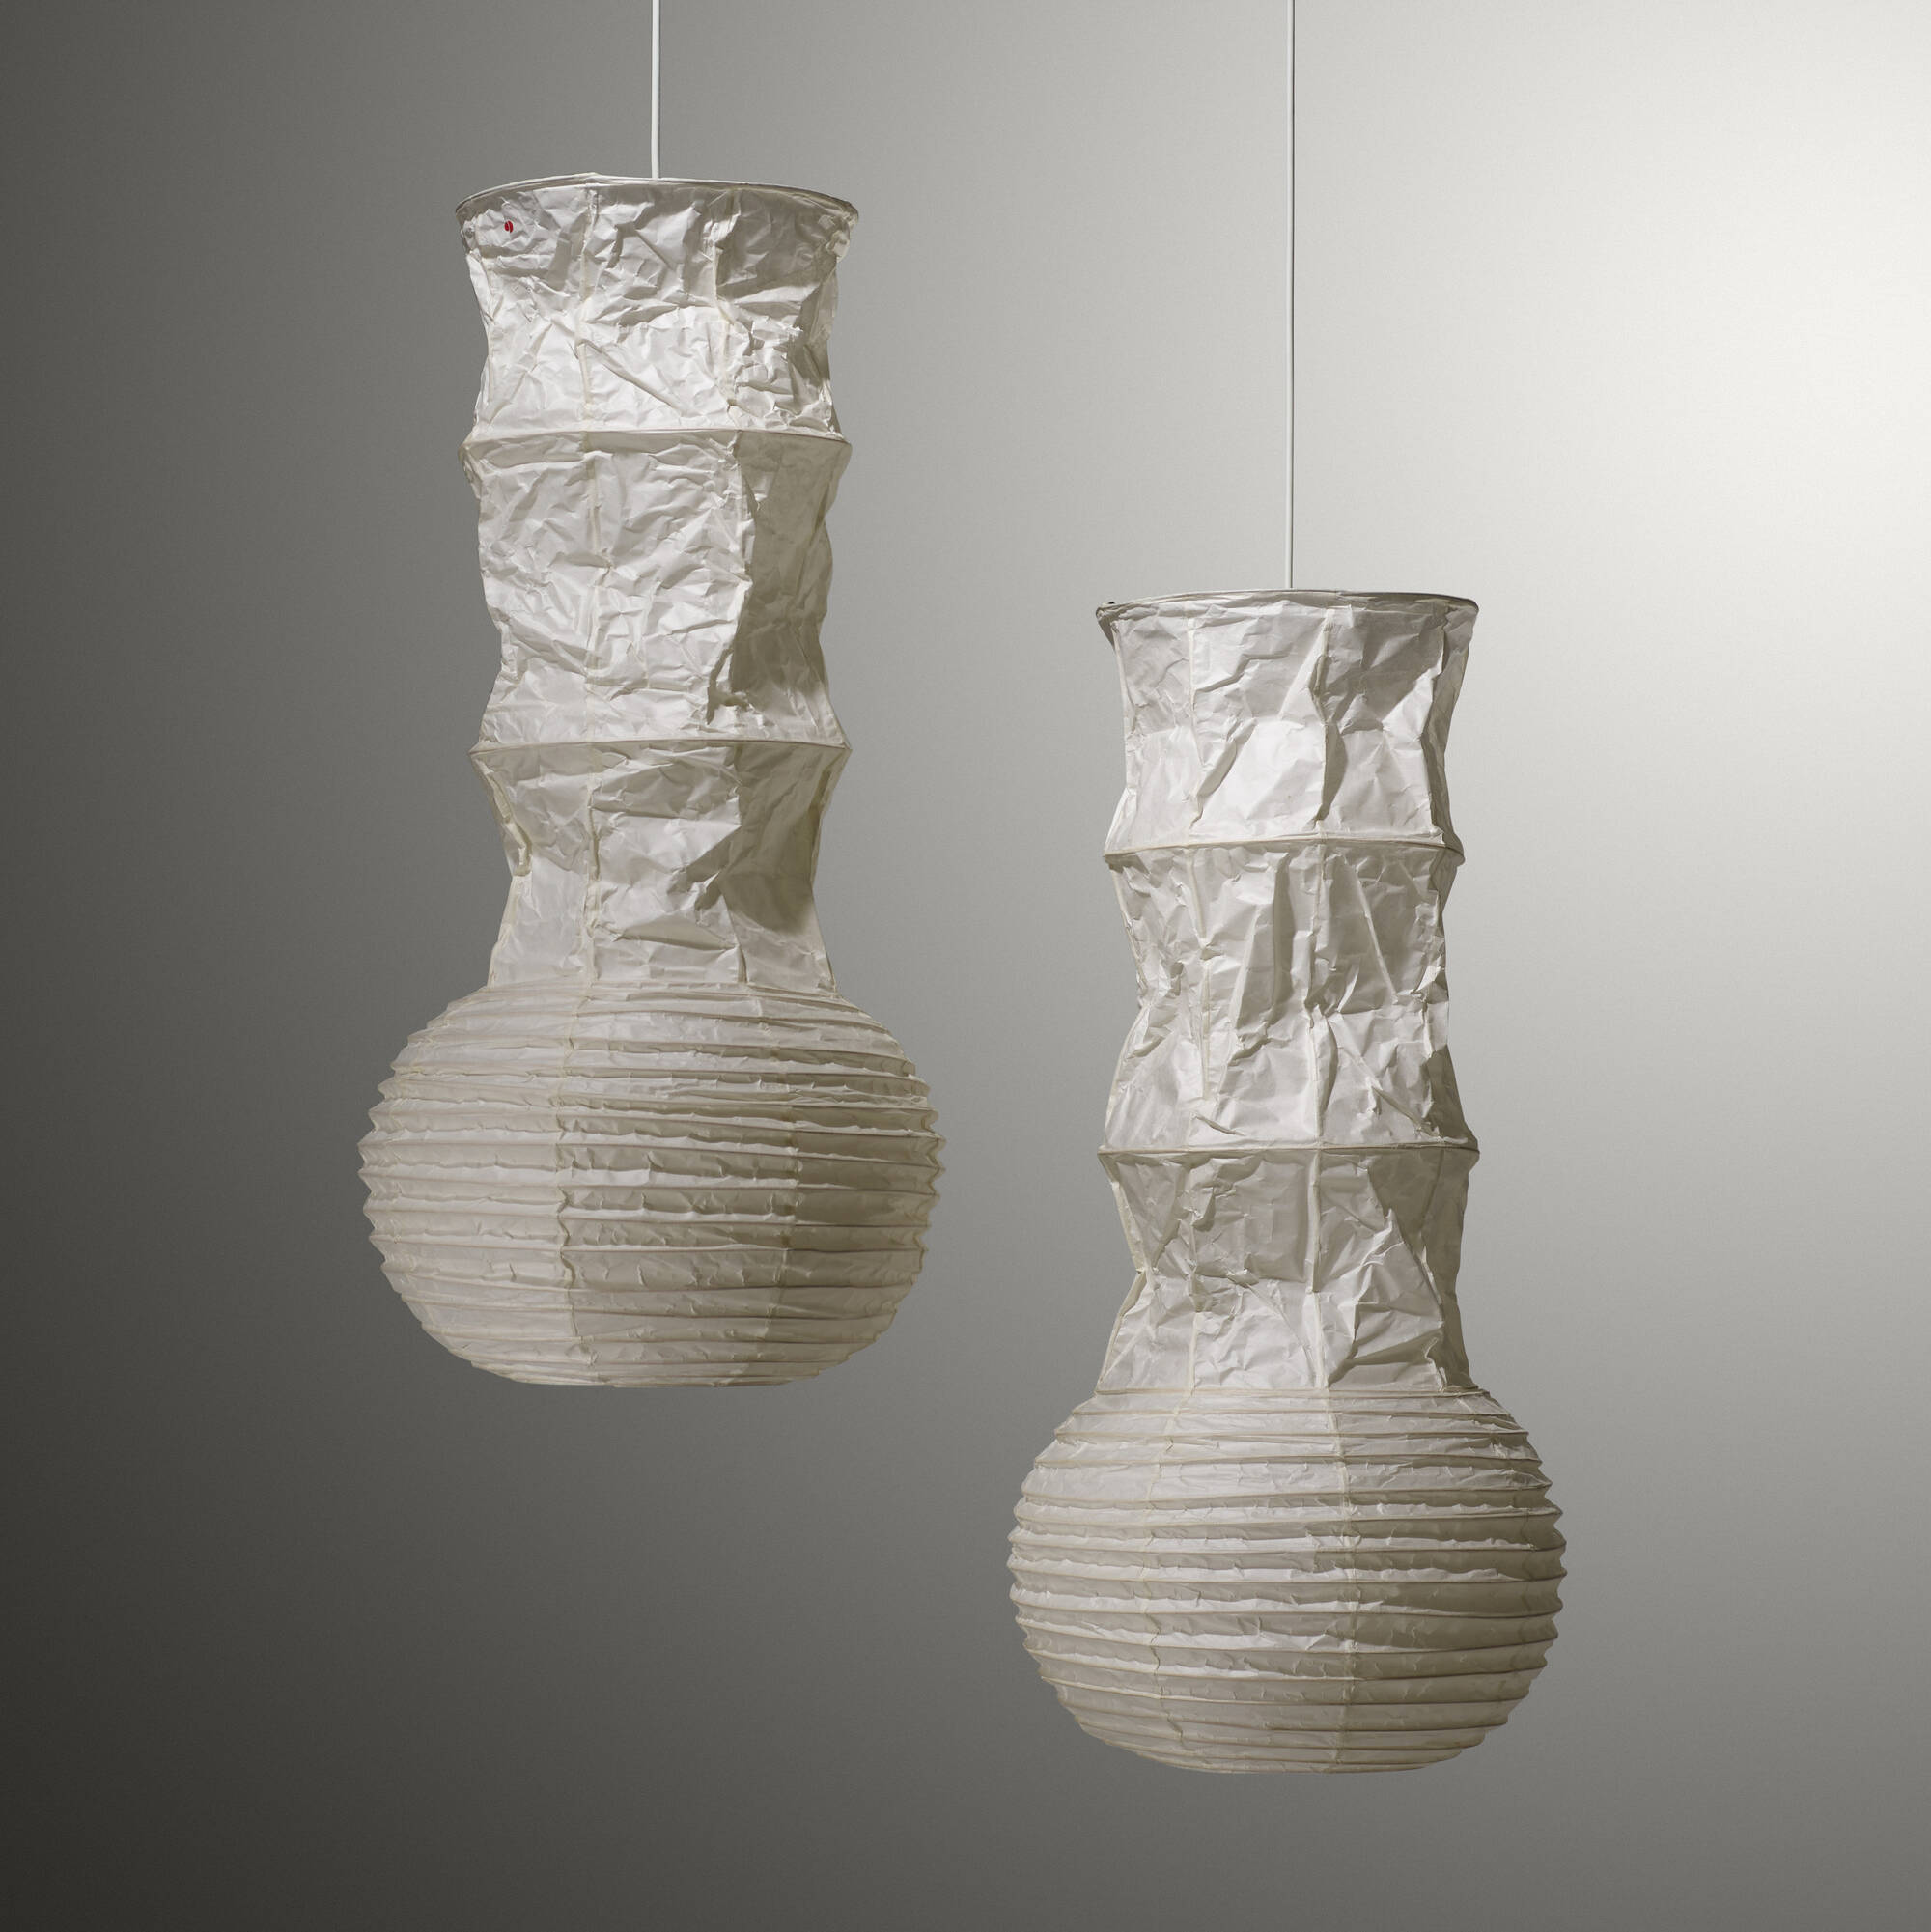 117: ISAMU NOGUCHI, Akari light sculptures model S2, pair < Taking 